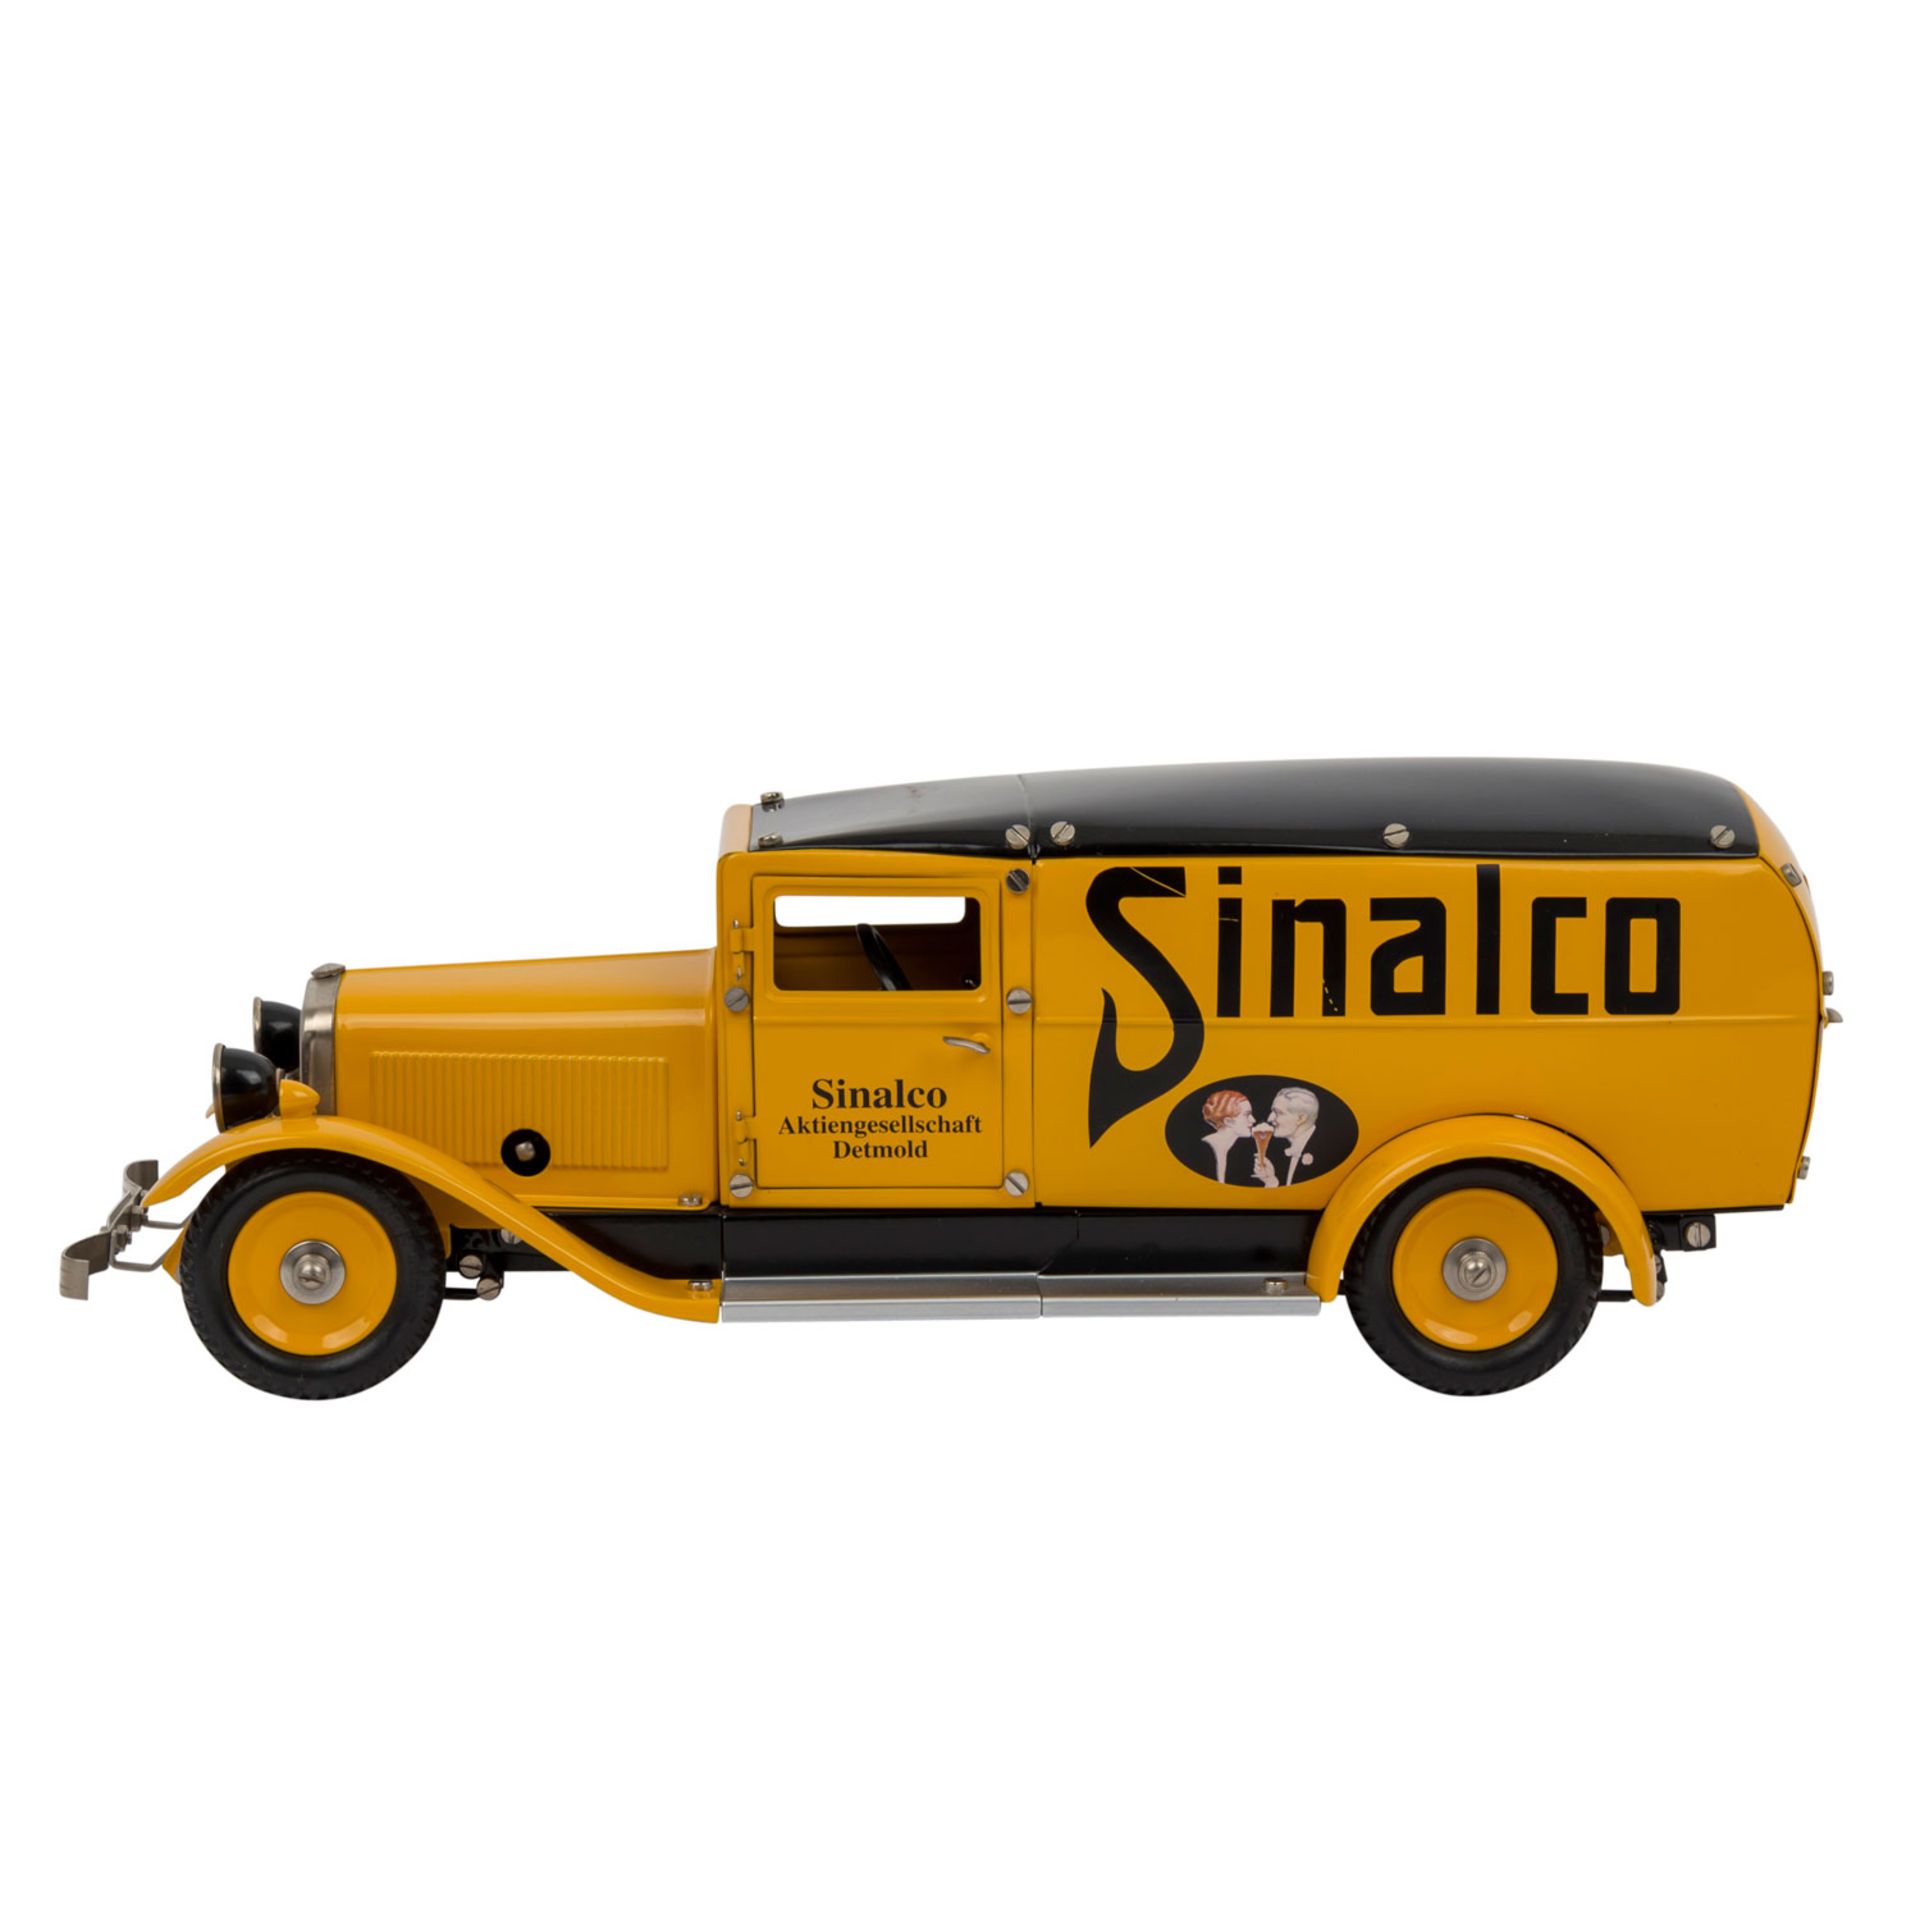 MÄRKLIN Lieferwagen "Sinalco" 19040,gelblackierte Blechausführung mit schwarzem Dach - Image 2 of 3